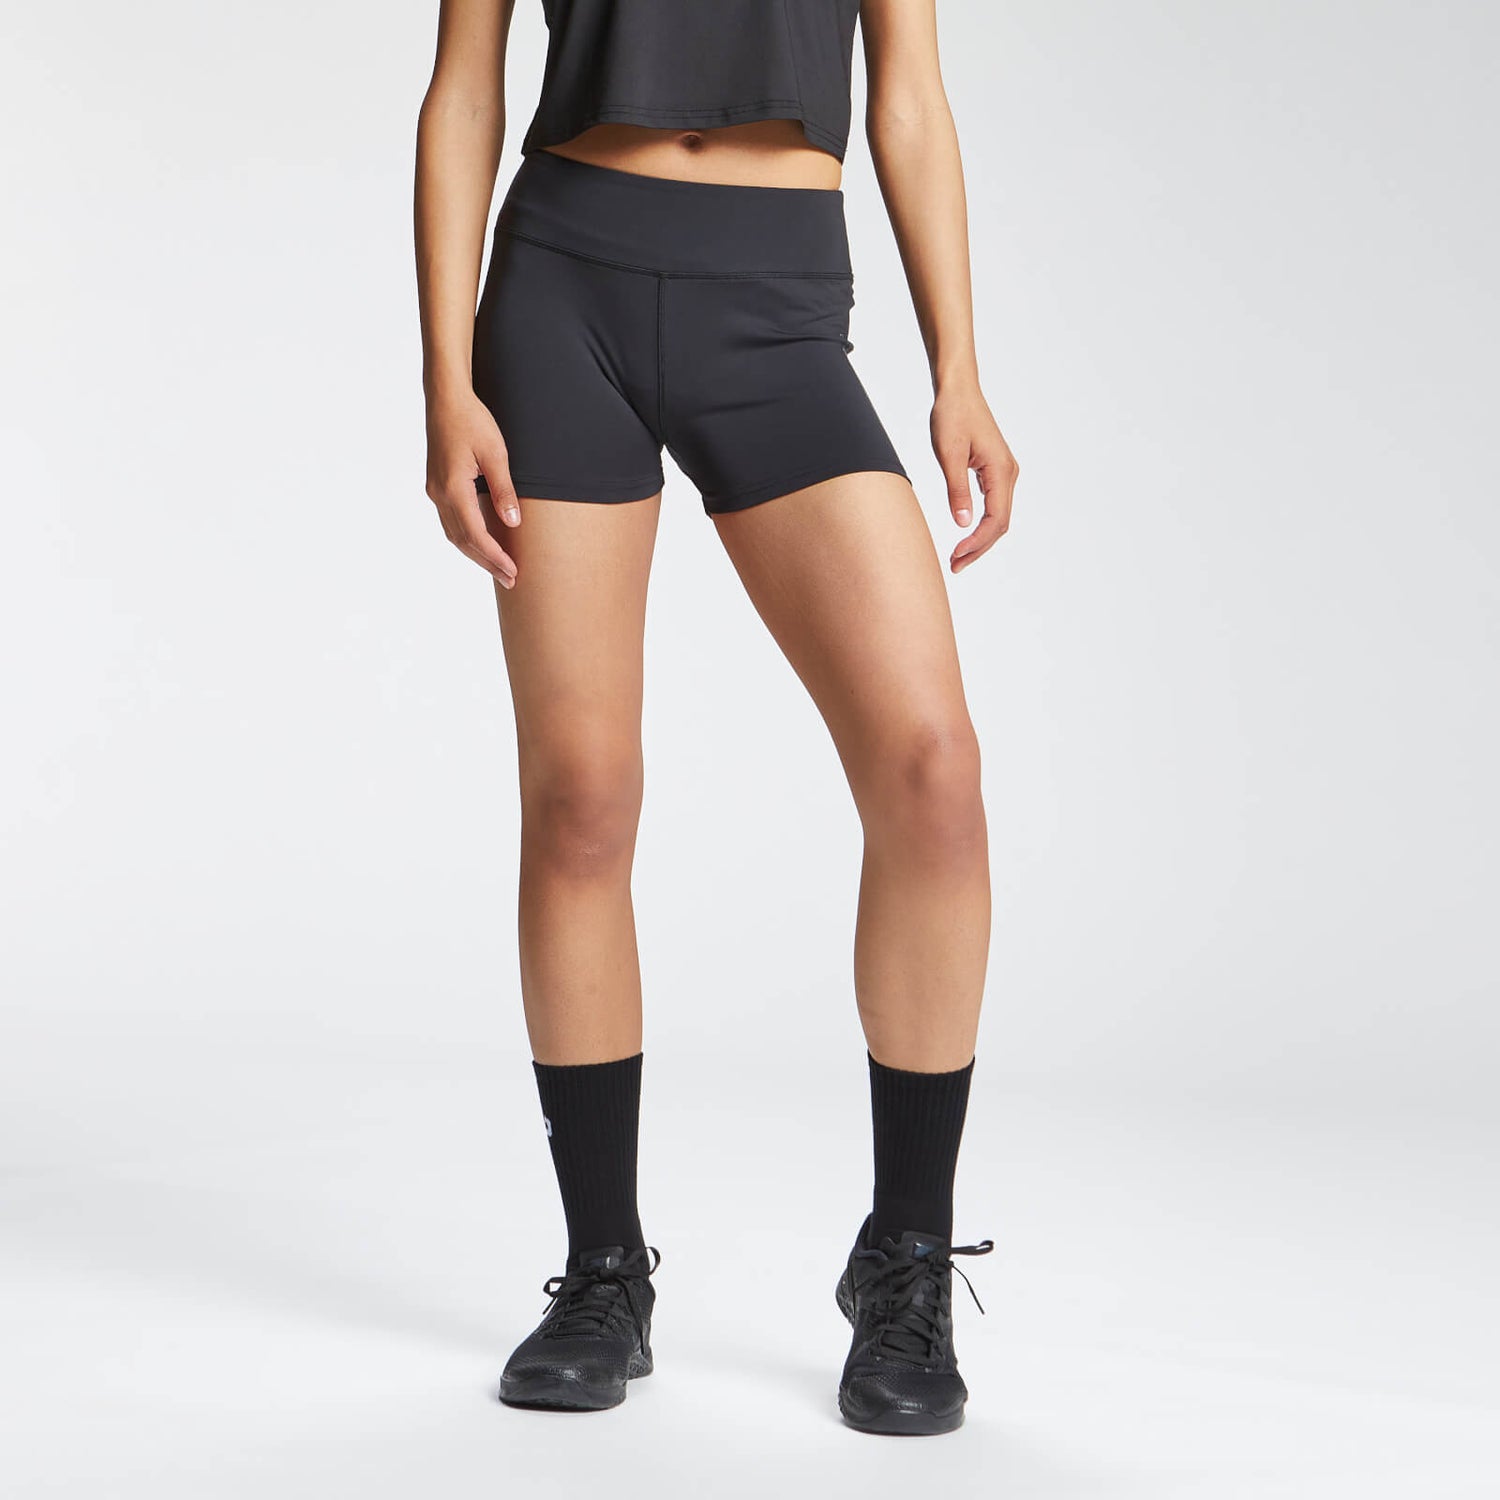 Pantalón supercorto de entrenamiento con estampado repetido de MP para mujer de MP - Negro - XL